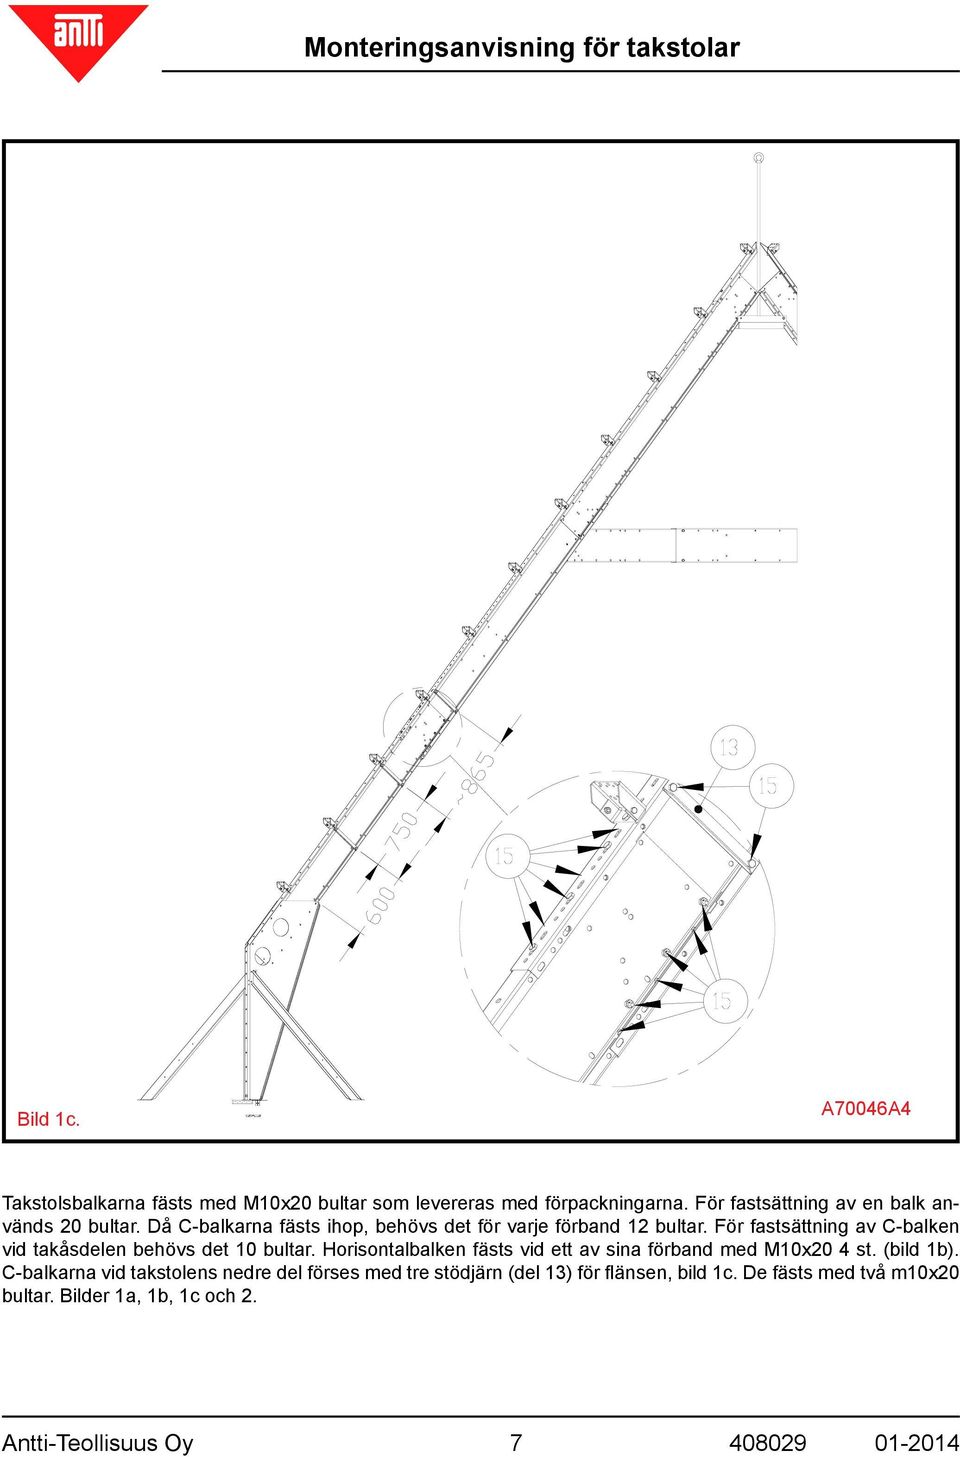 För fastsättning av C-balken vid takåsdelen behövs det 10 bultar. Horisontalbalken fästs vid ett av sina förband med M10x20 4 st.